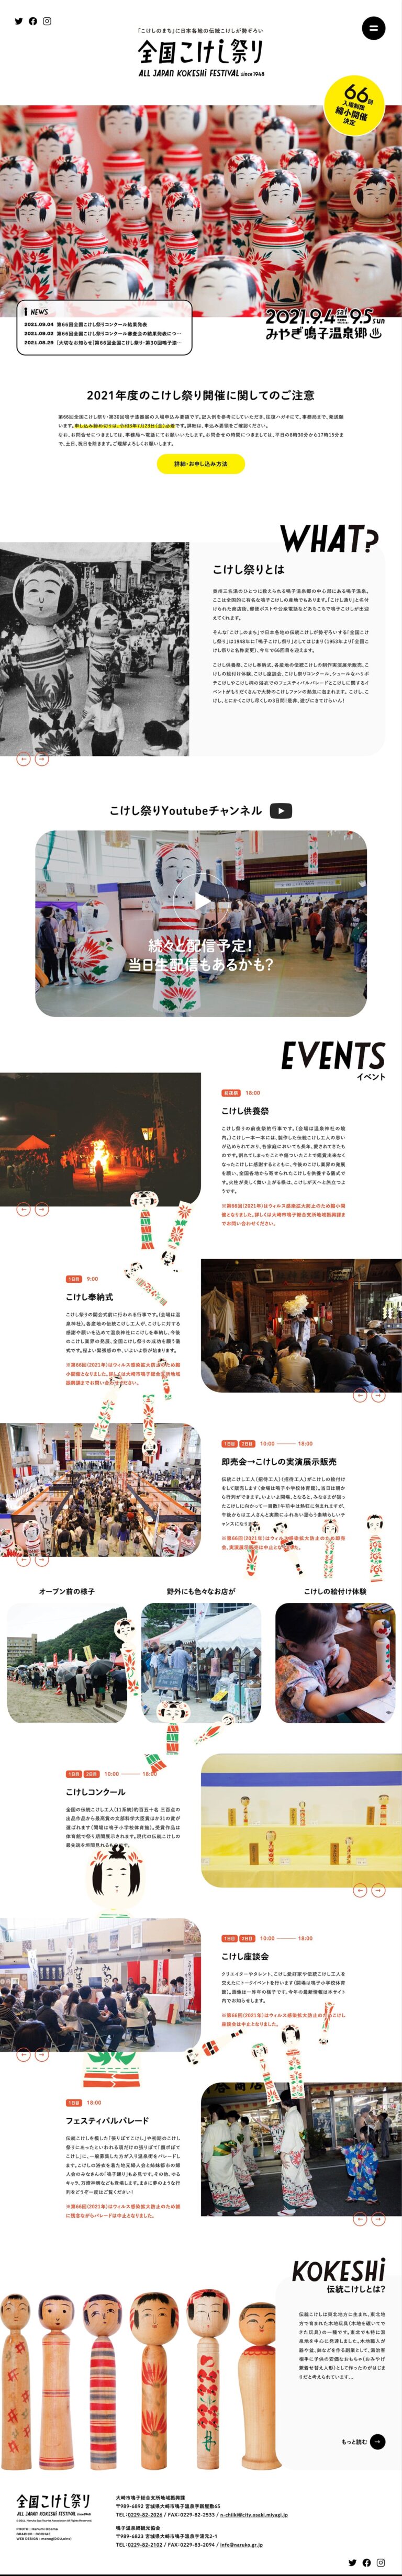 全国こけし祭り | 「こけしのまち」に日本各地の伝統こけしが勢ぞろい